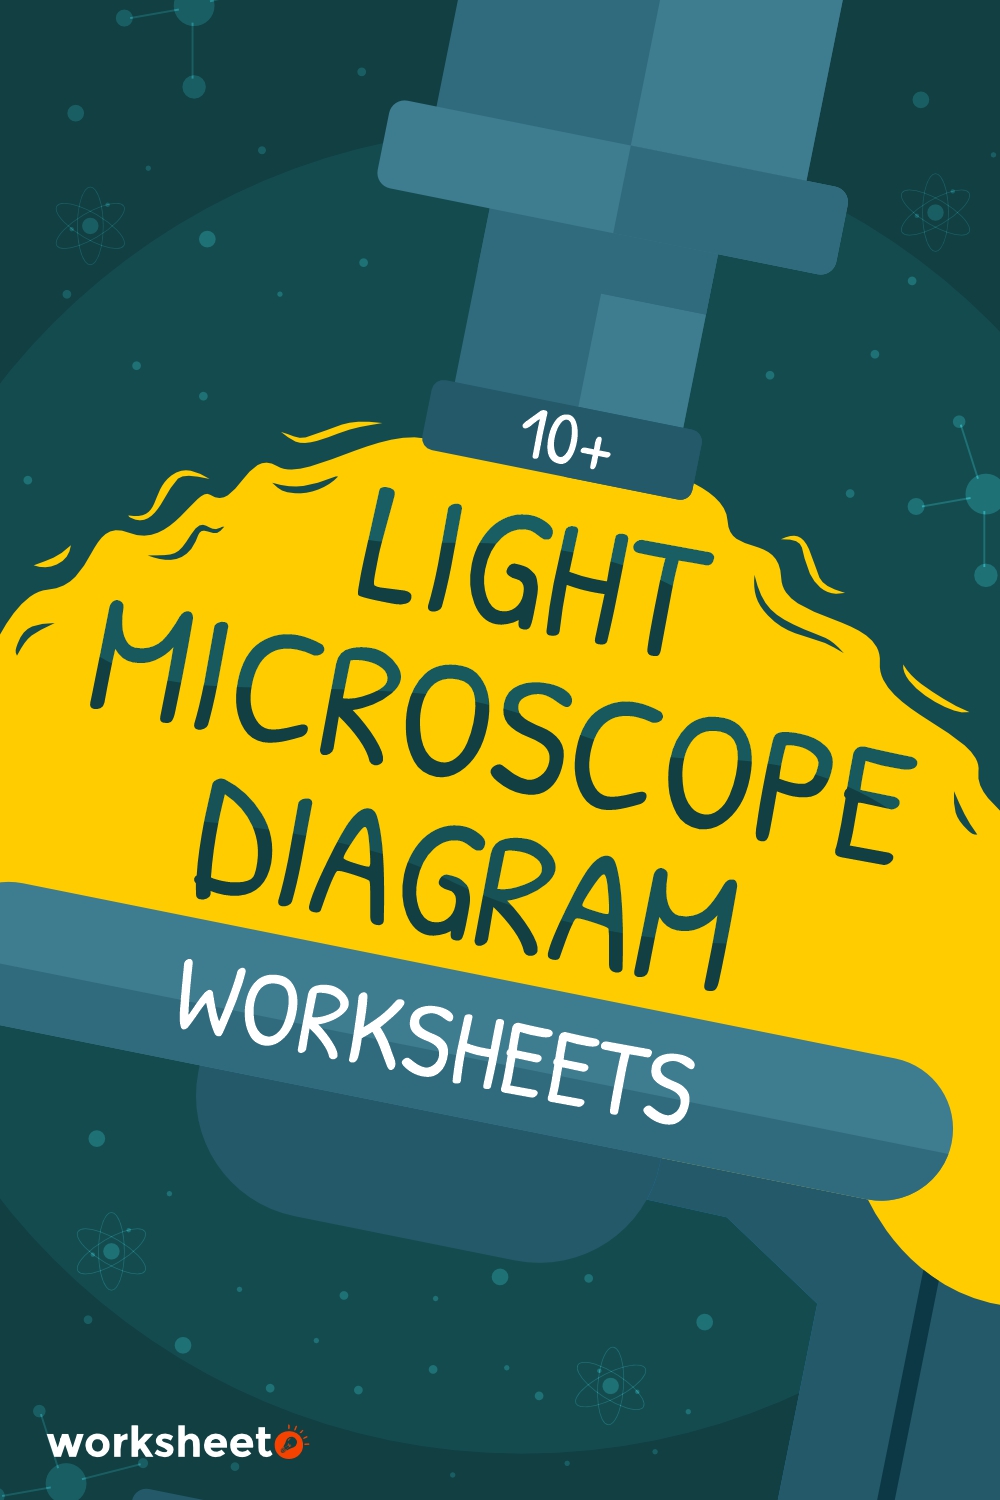 Light Microscope Diagram Worksheet